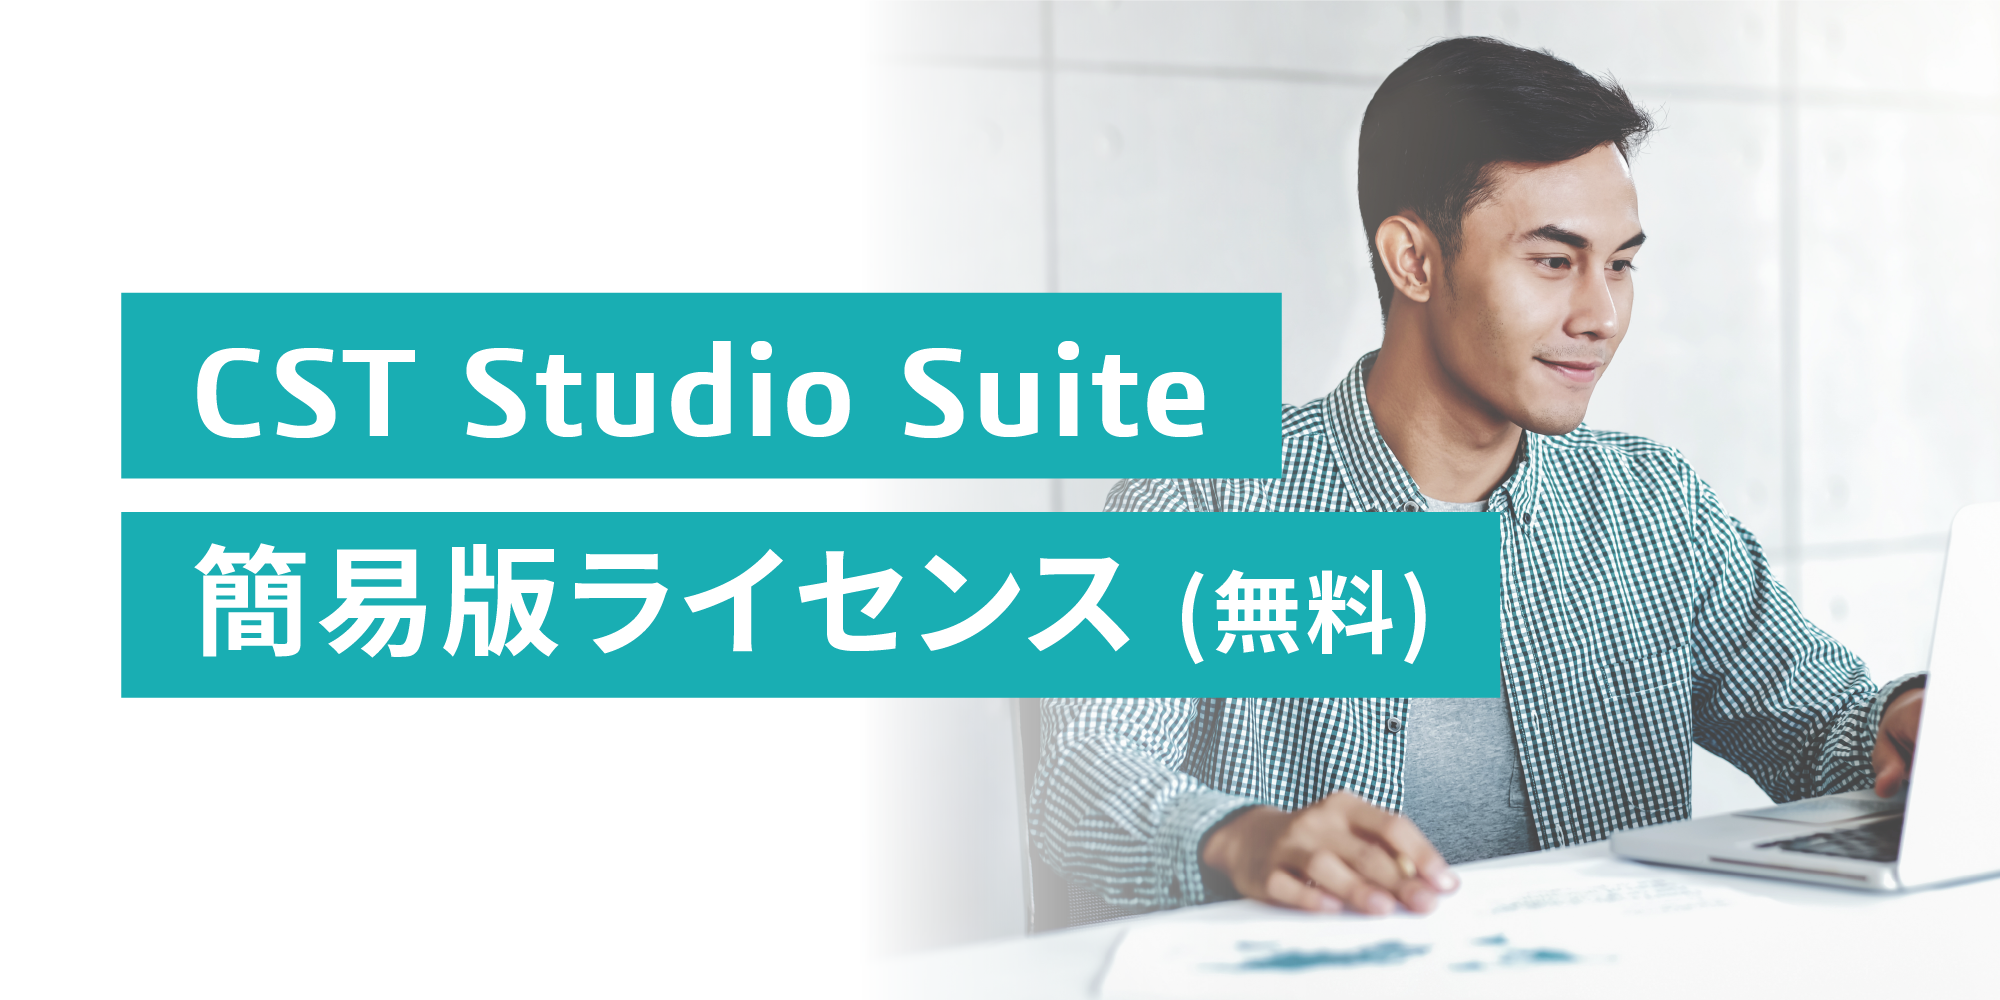 CST Studio Suite 簡易版ライセンス